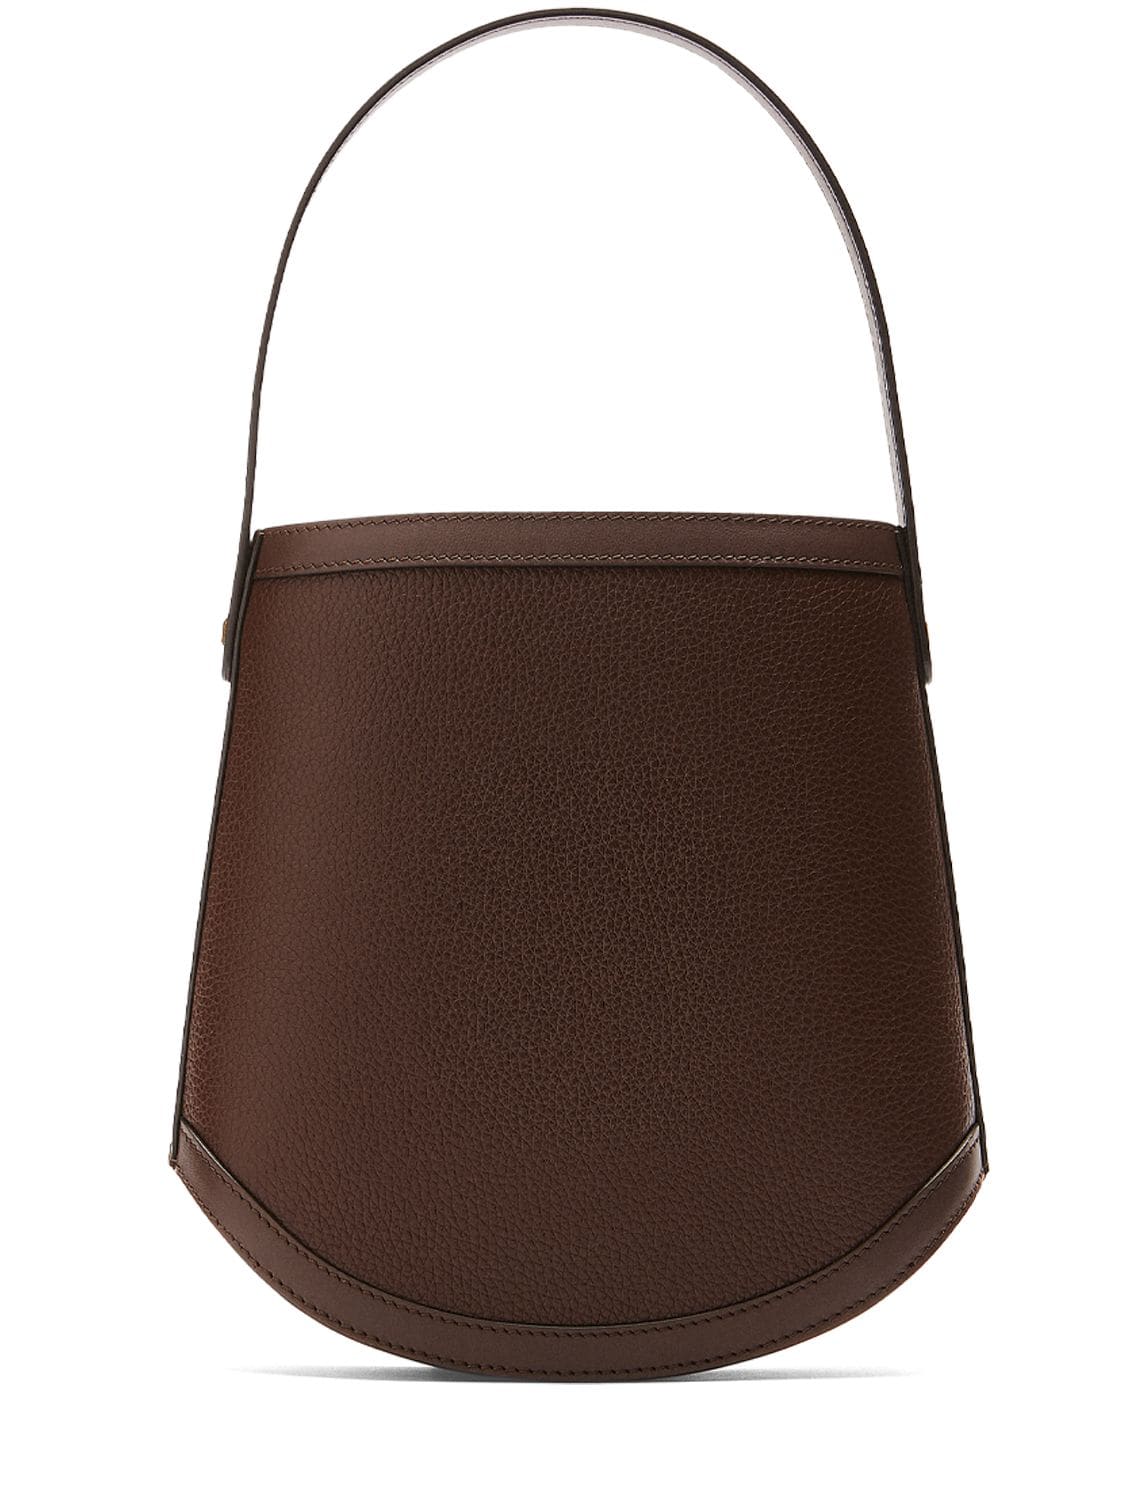 Image of Bucket Leather Shoulder Bag